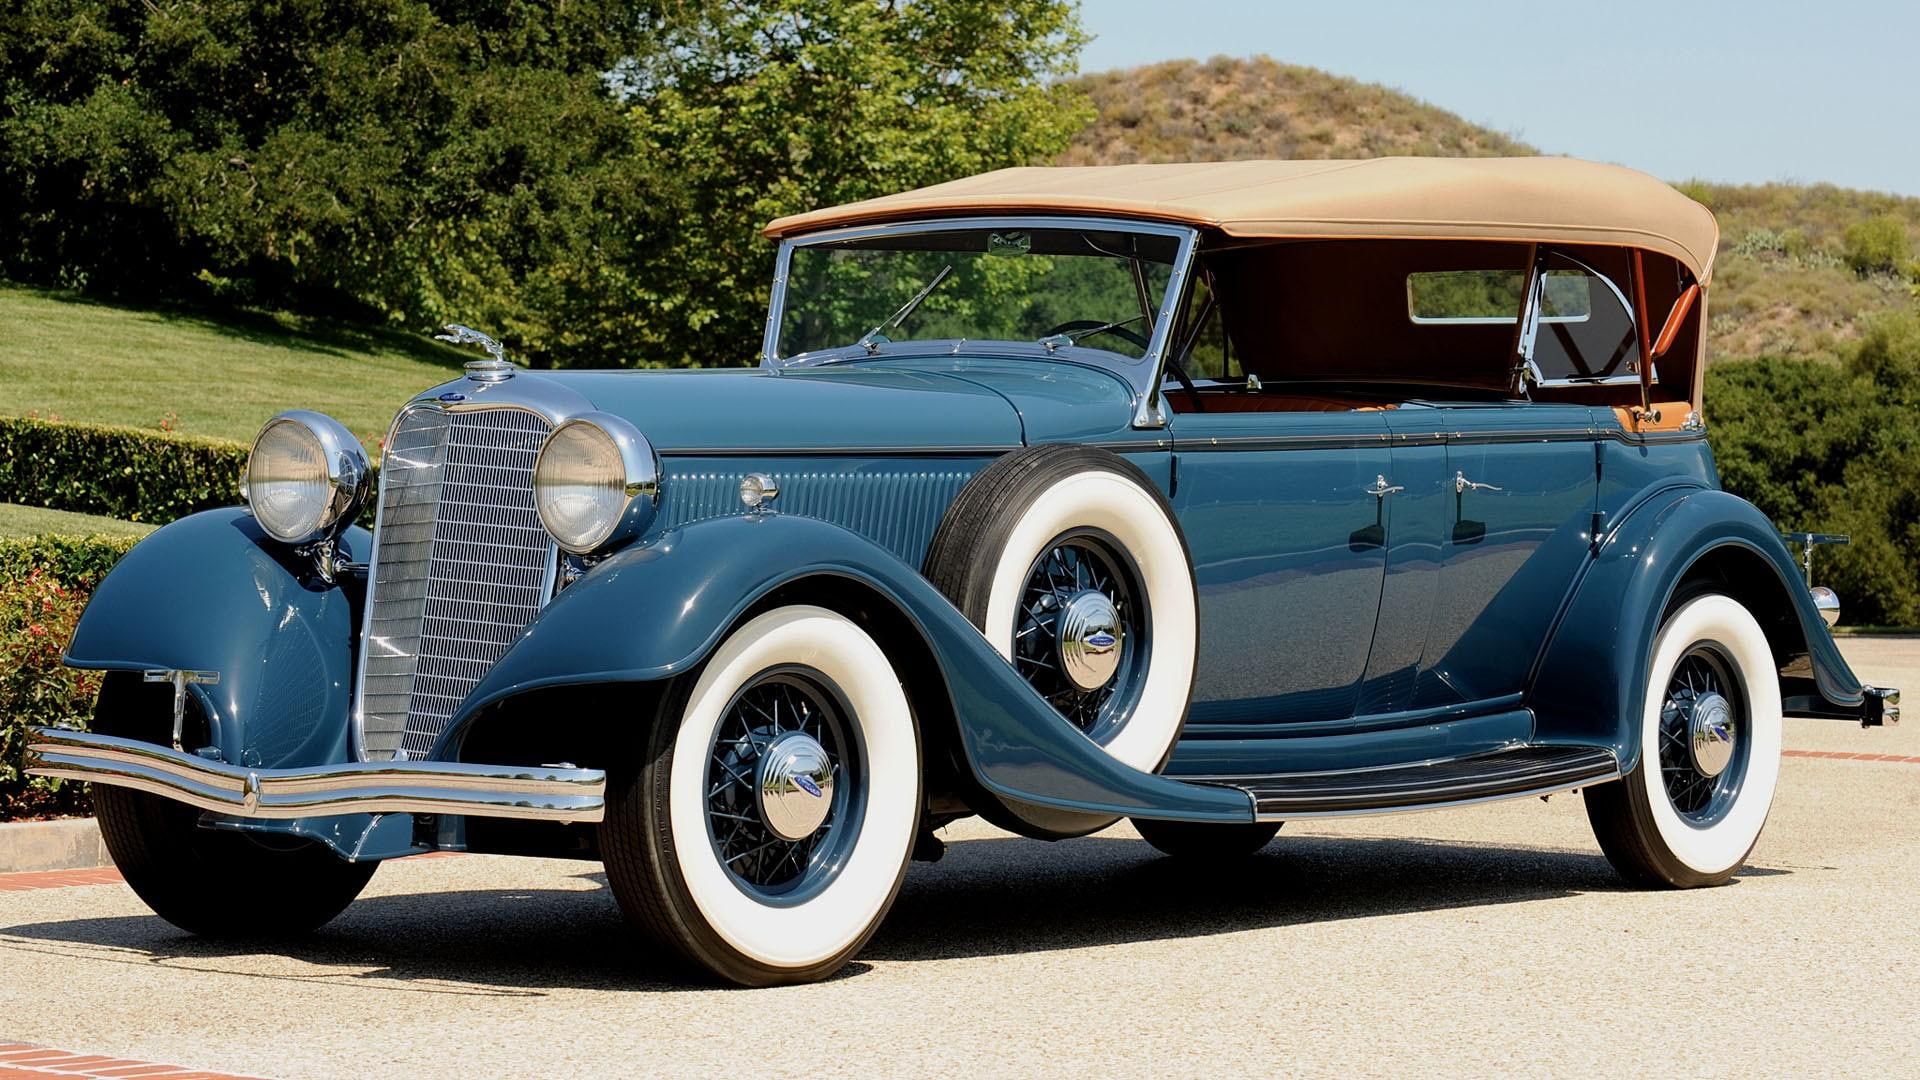 1933 Lincoln Kb Phaeton, vintage, elegant, classic, elegance